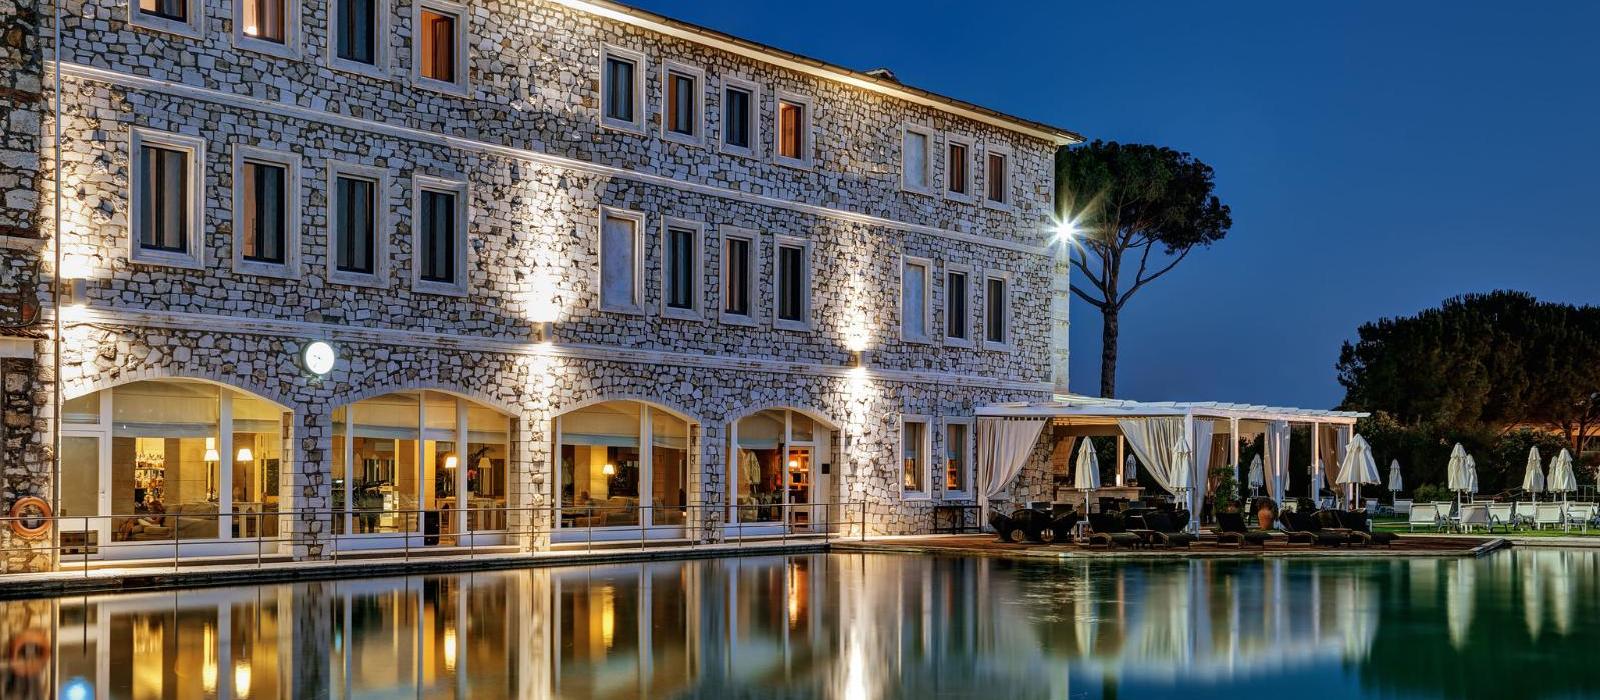 萨图尼亚温泉水疗高尔夫度假酒店(Terme di Saturnia Natural SPA & Golf Resort) 图片  www.lhw.cn